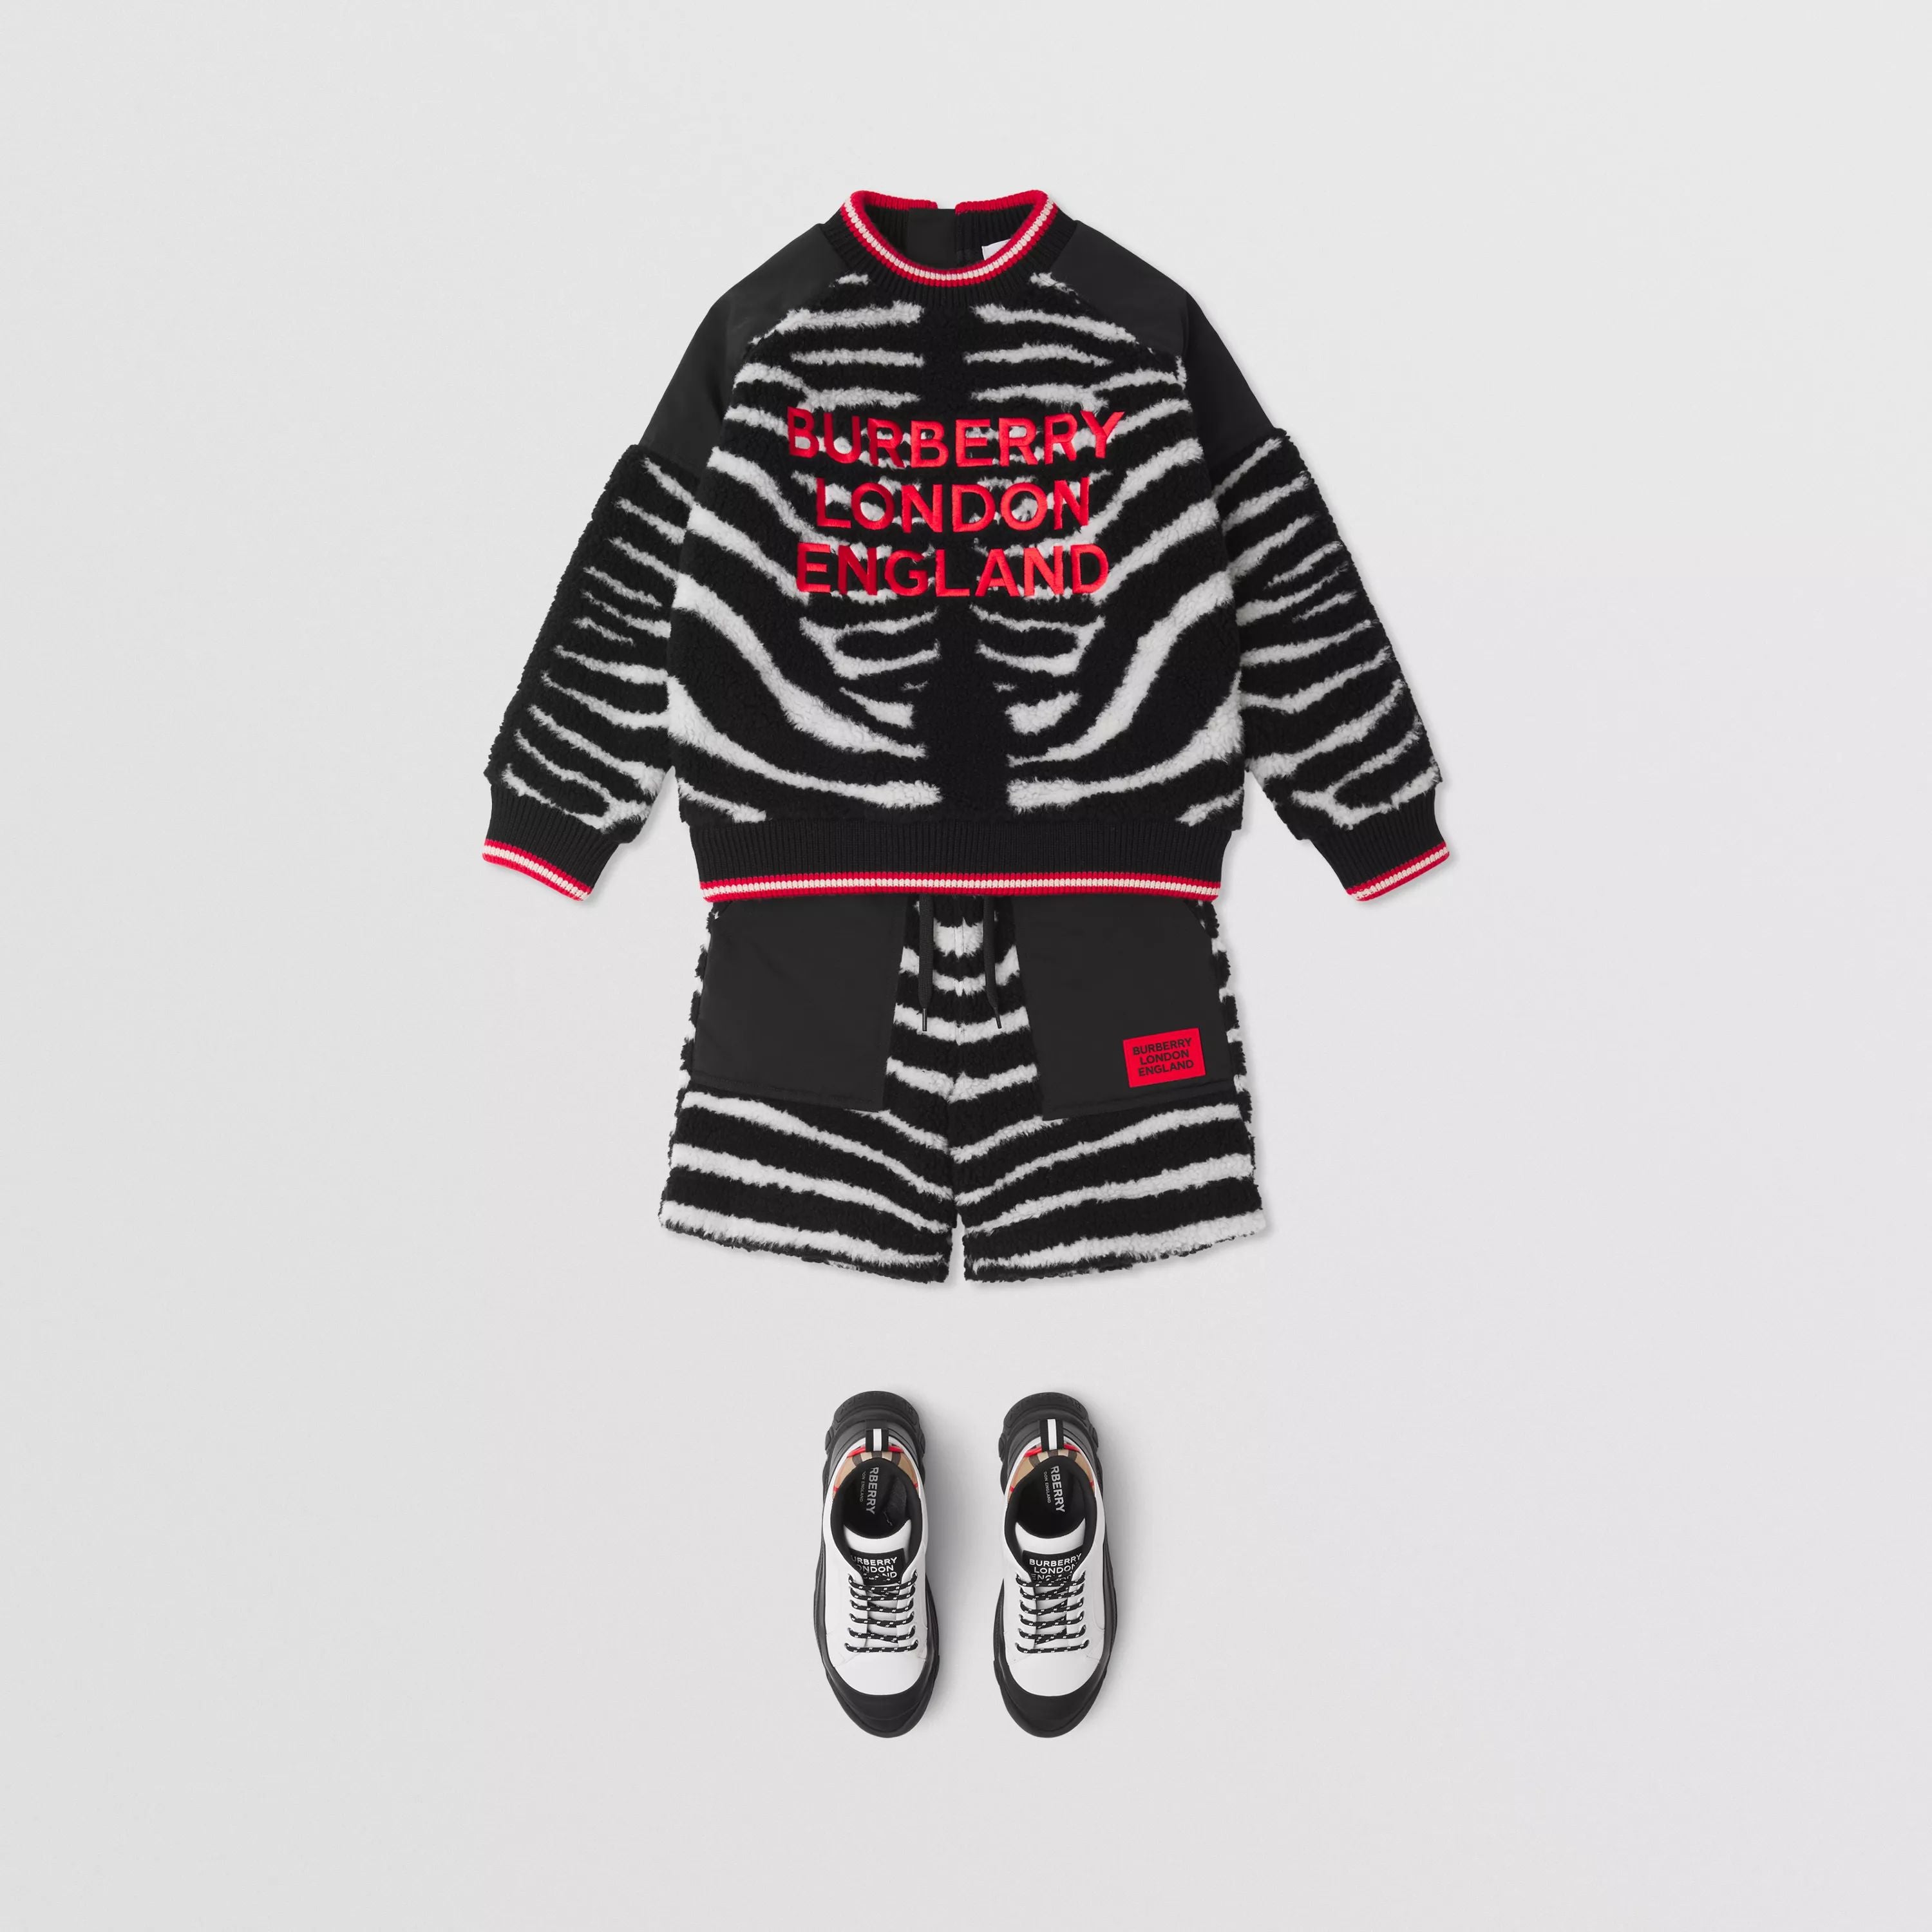 Boys Black Zebra Pattern Shorts